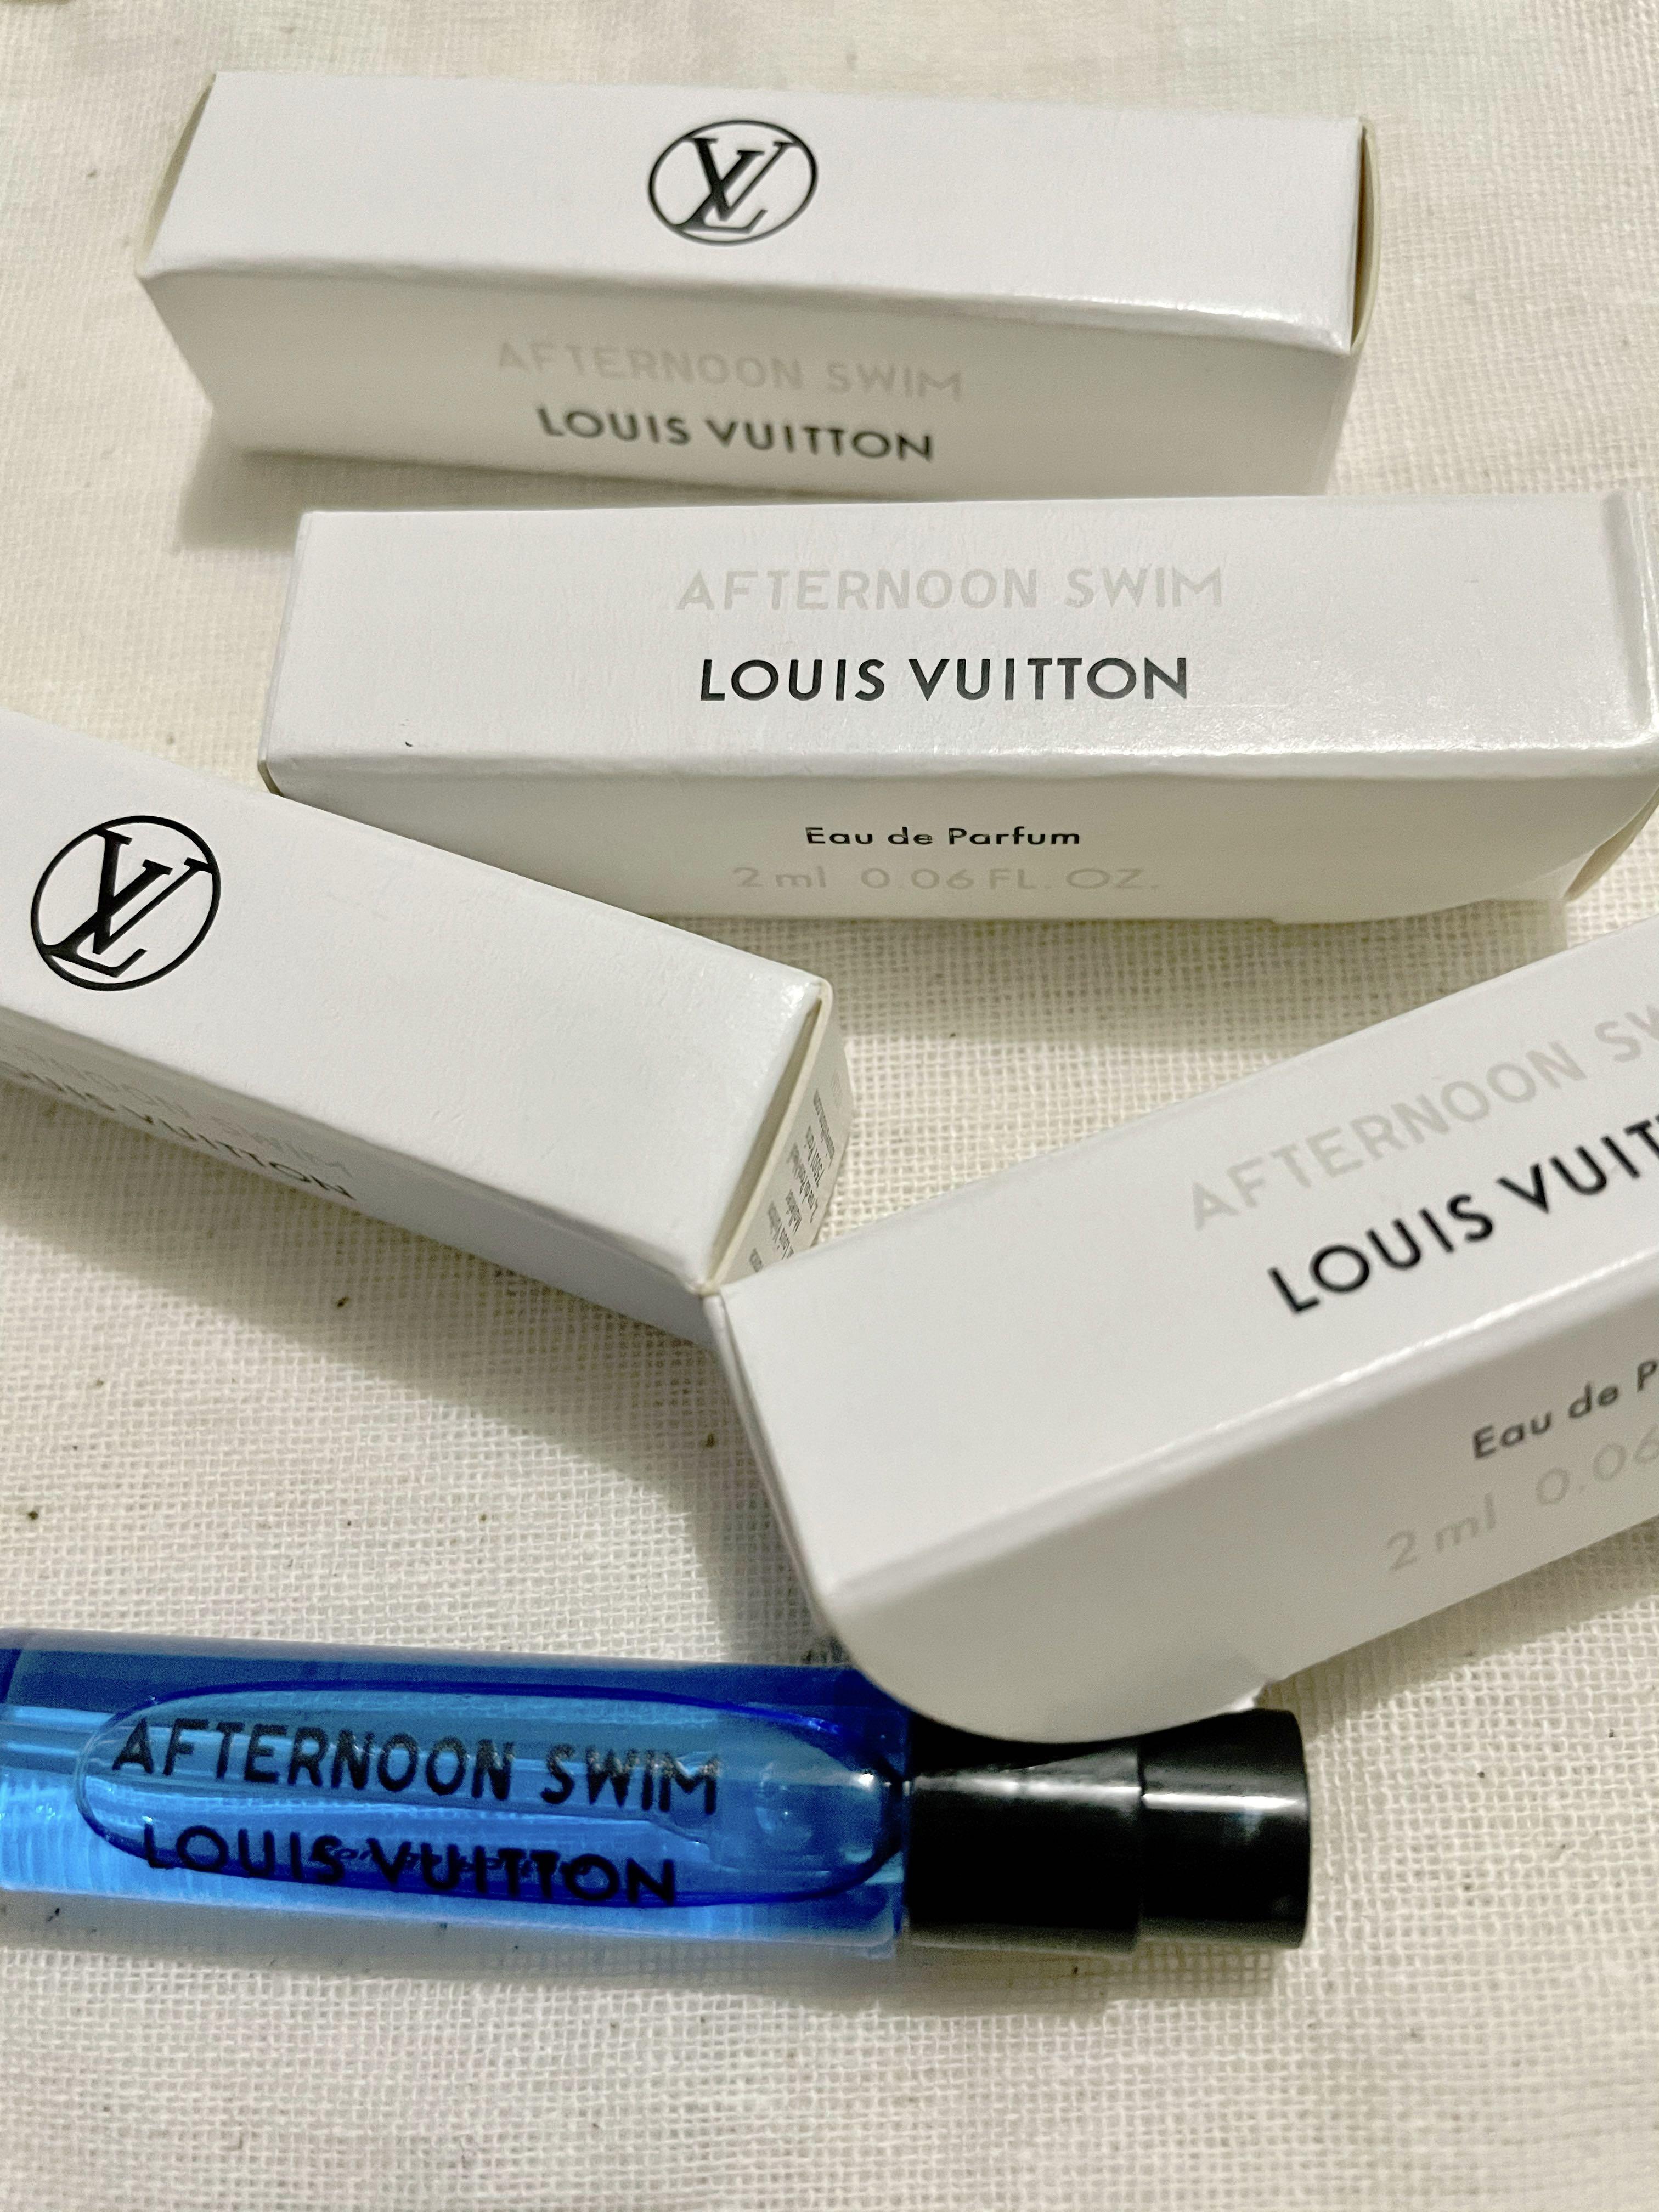 Louis Vuitton afternoon swim 2 ml